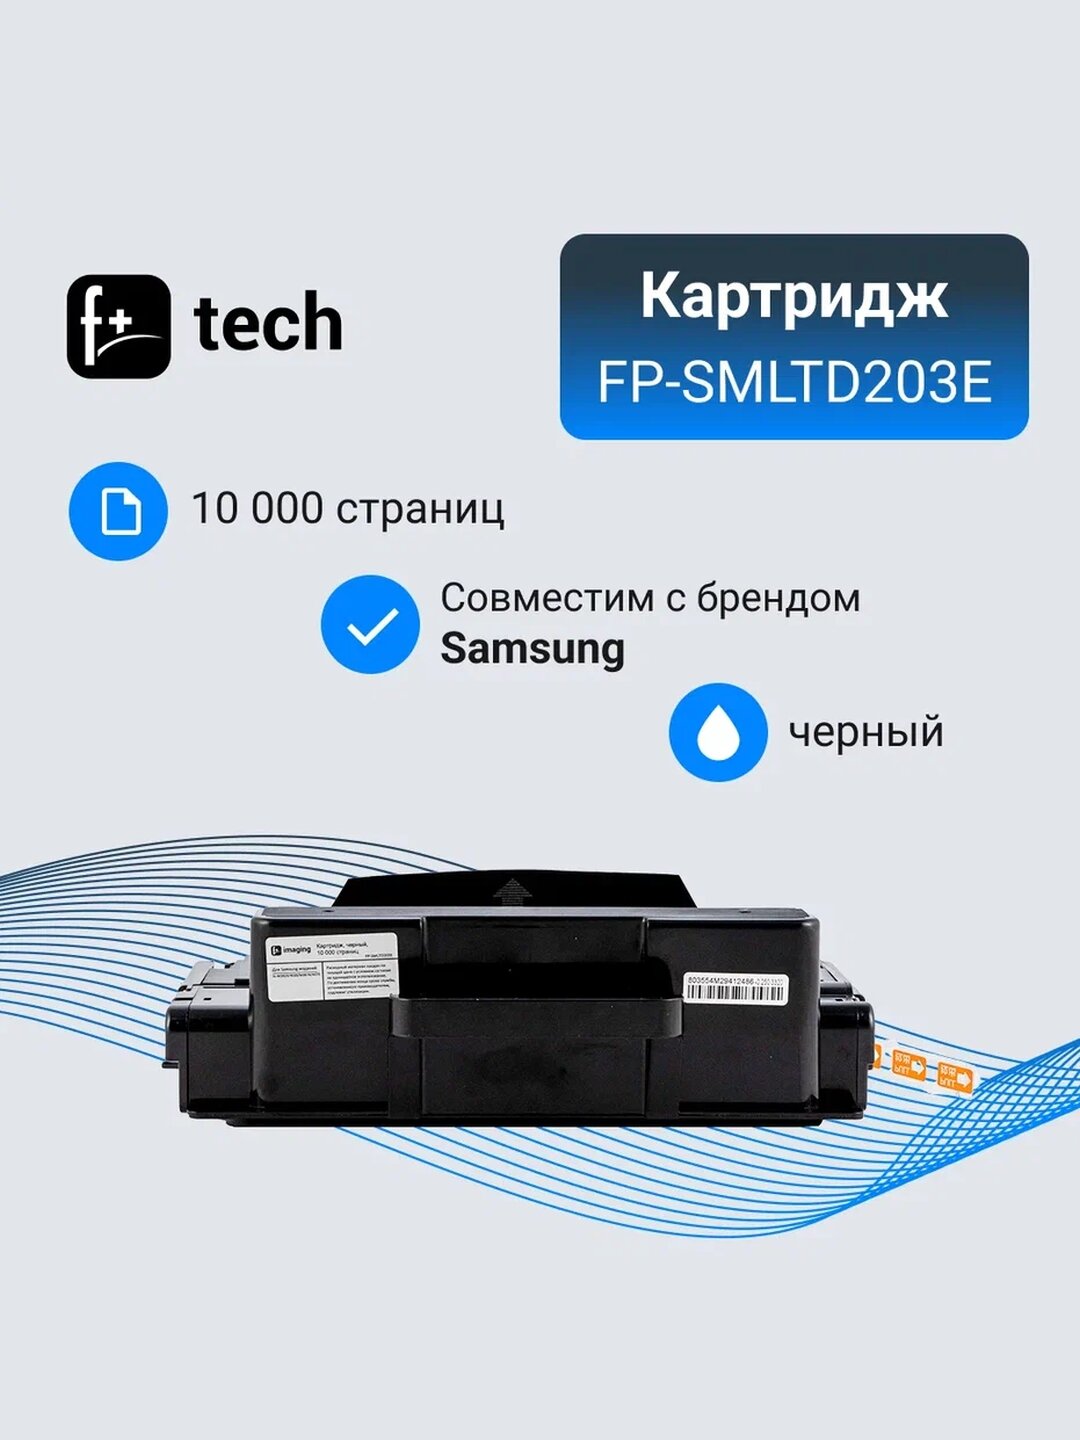 Картридж F+ imaging, черный, 10 000 страниц, без чипа (требуется установка), для Samsung моделей SL-M3820/4020/M3870/4070 (аналог MLT-D203E), FP-SMLTD203E